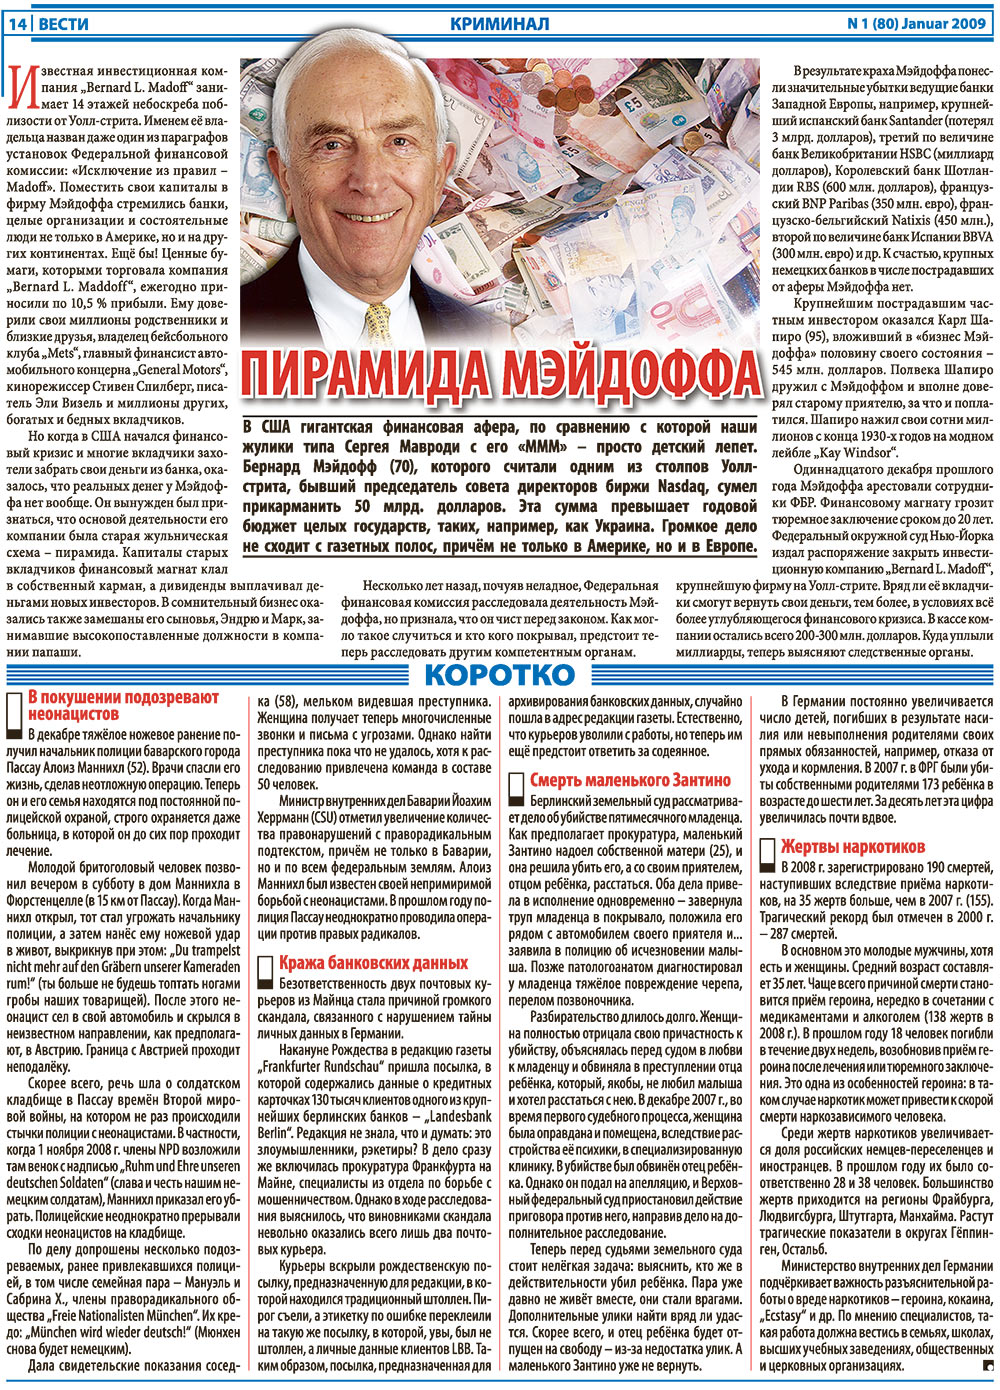 Вести, газета. 2009 №1 стр.14